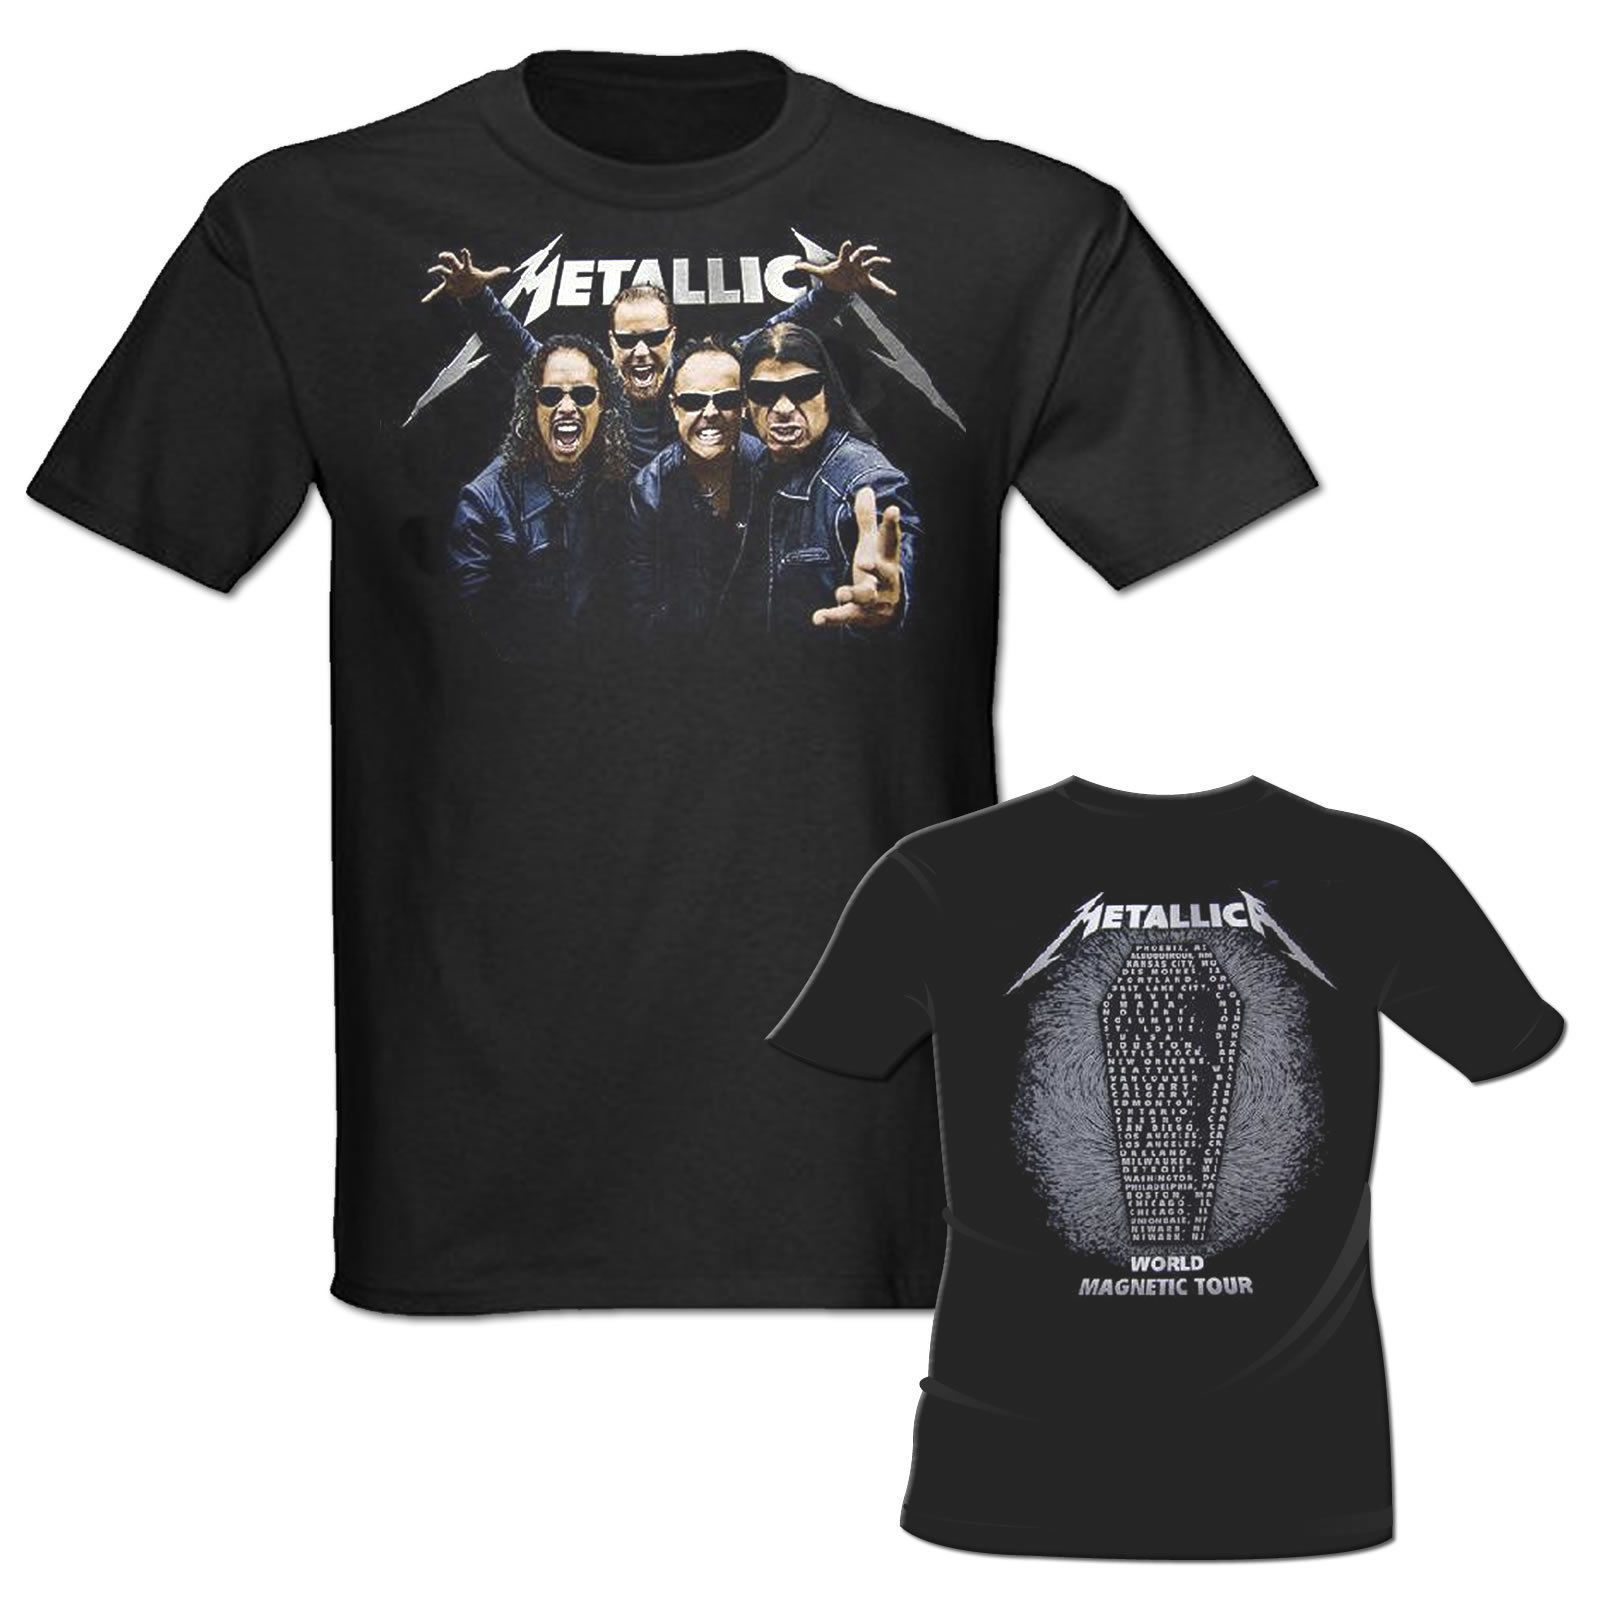 Metallica T-Shirt, World Magnetic Tour, 2009 Concert Tee, NEW, XL - Apparel